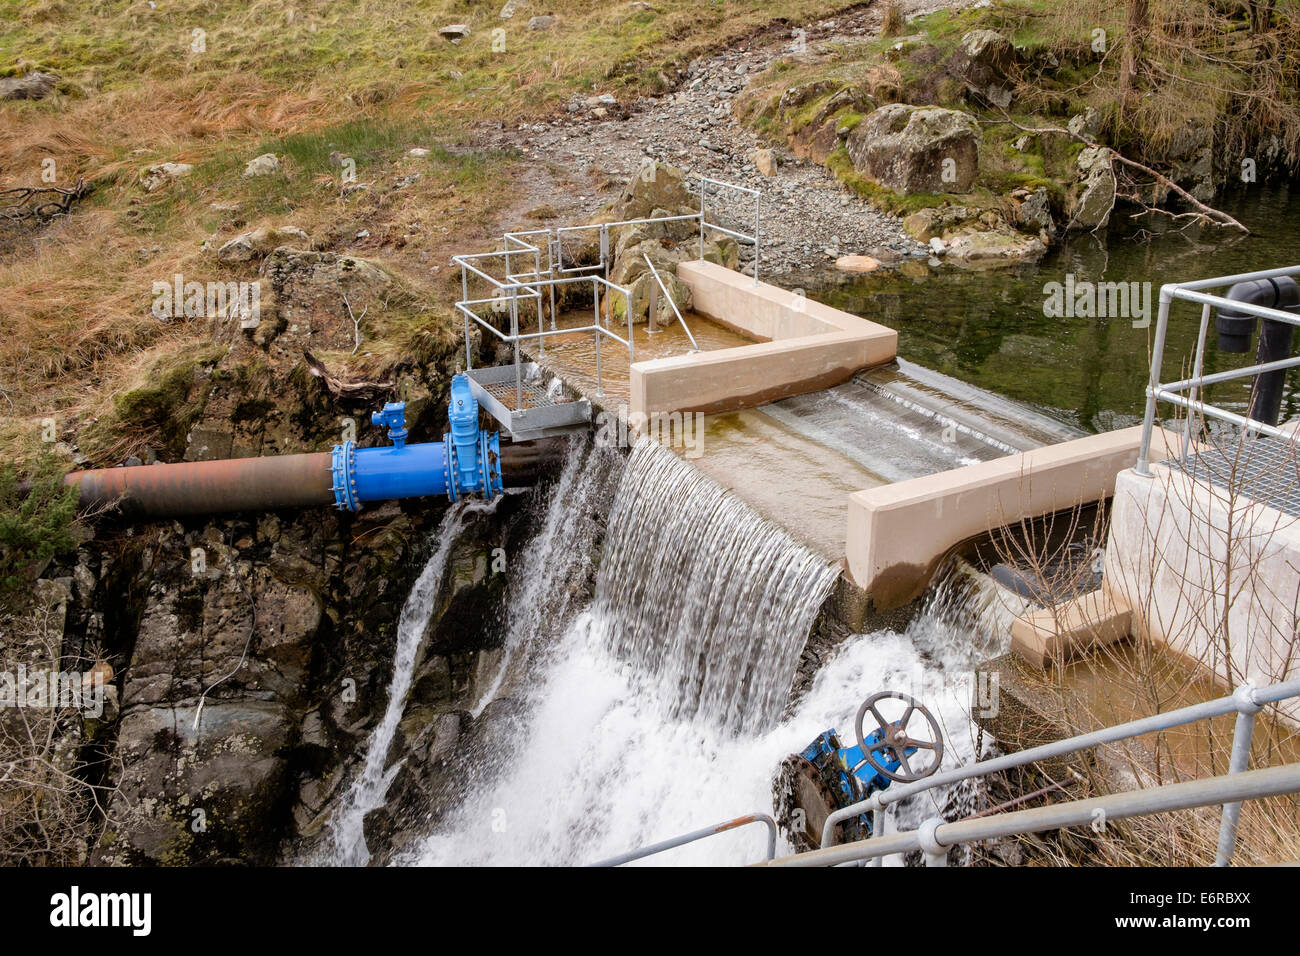 Kleines Wasserkraftwerk Schema Damm am Glenridding Beck in Lake District National Park Patterdale Cumbria England UK Großbritannien Stockfoto